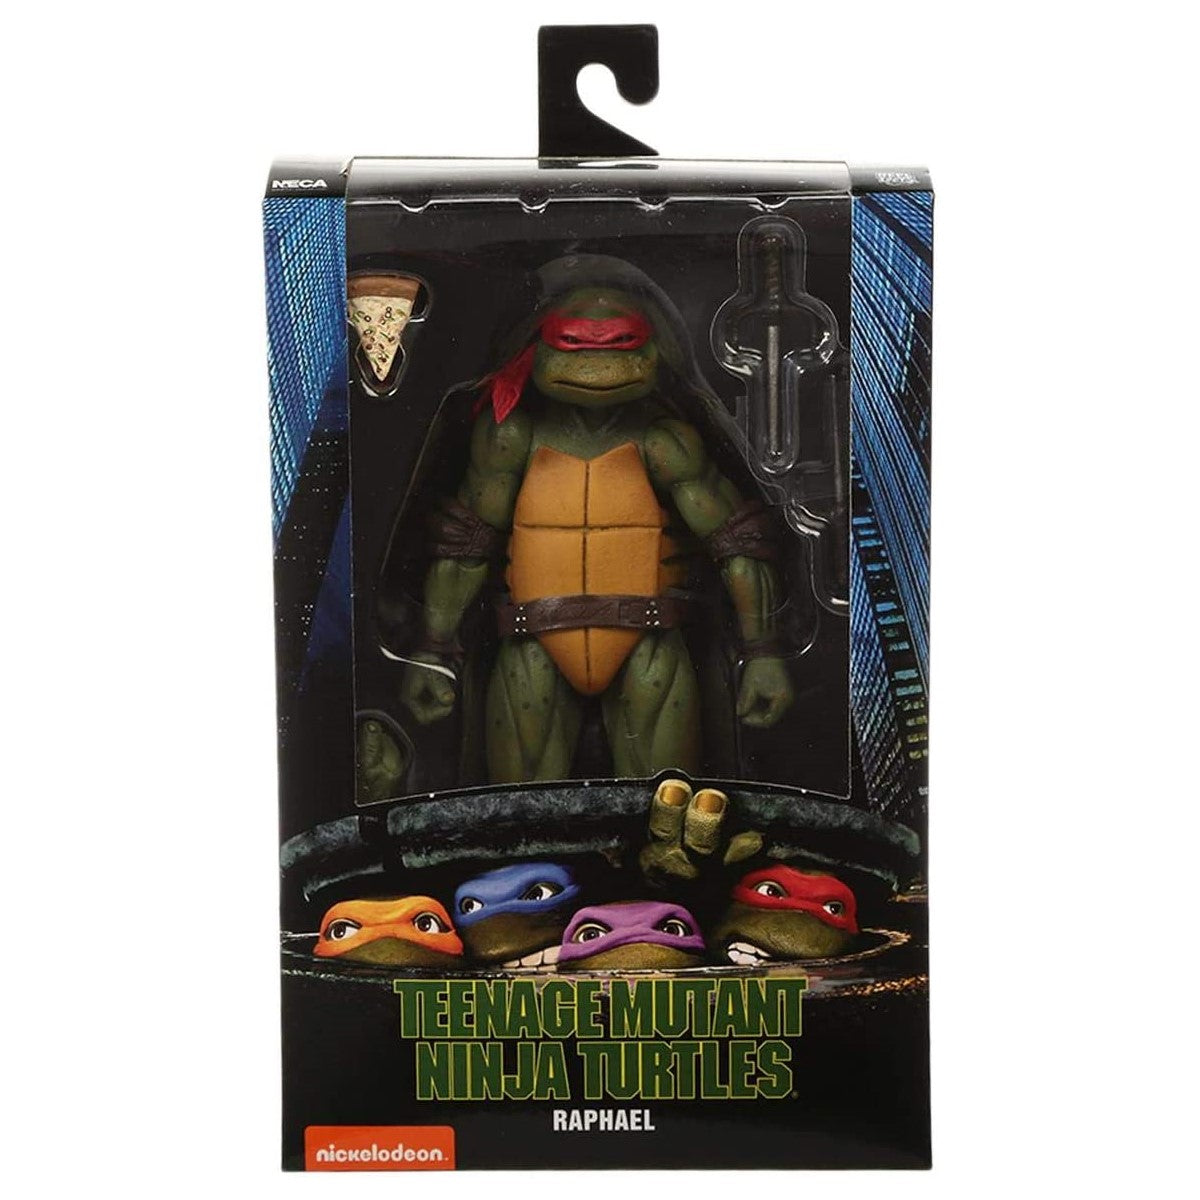 Teenage Mutant Ninja Turtles 1990 Raphael 7" Figure - NECA